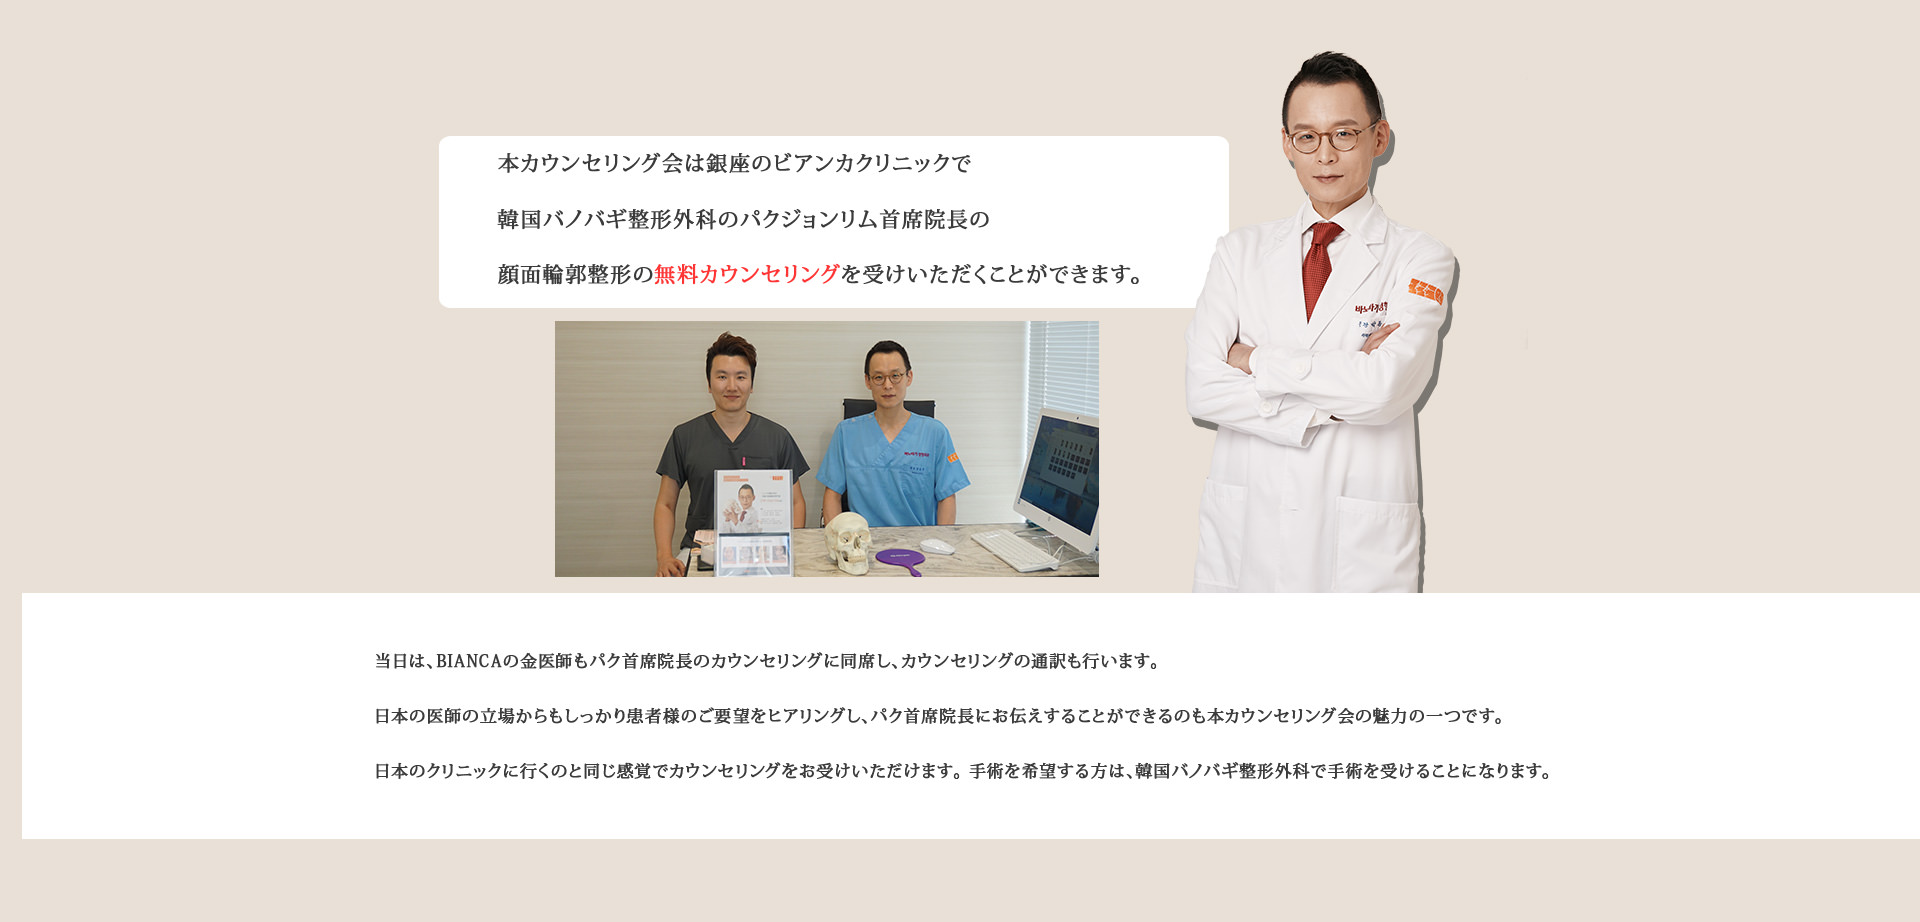 本カウンセリング会は銀座のビアンカクリニックで韓国バノバギ整形外科のパクジョンリム首席院長の顔面輪郭整形の無料カウンセリングを受けいただくことができます。